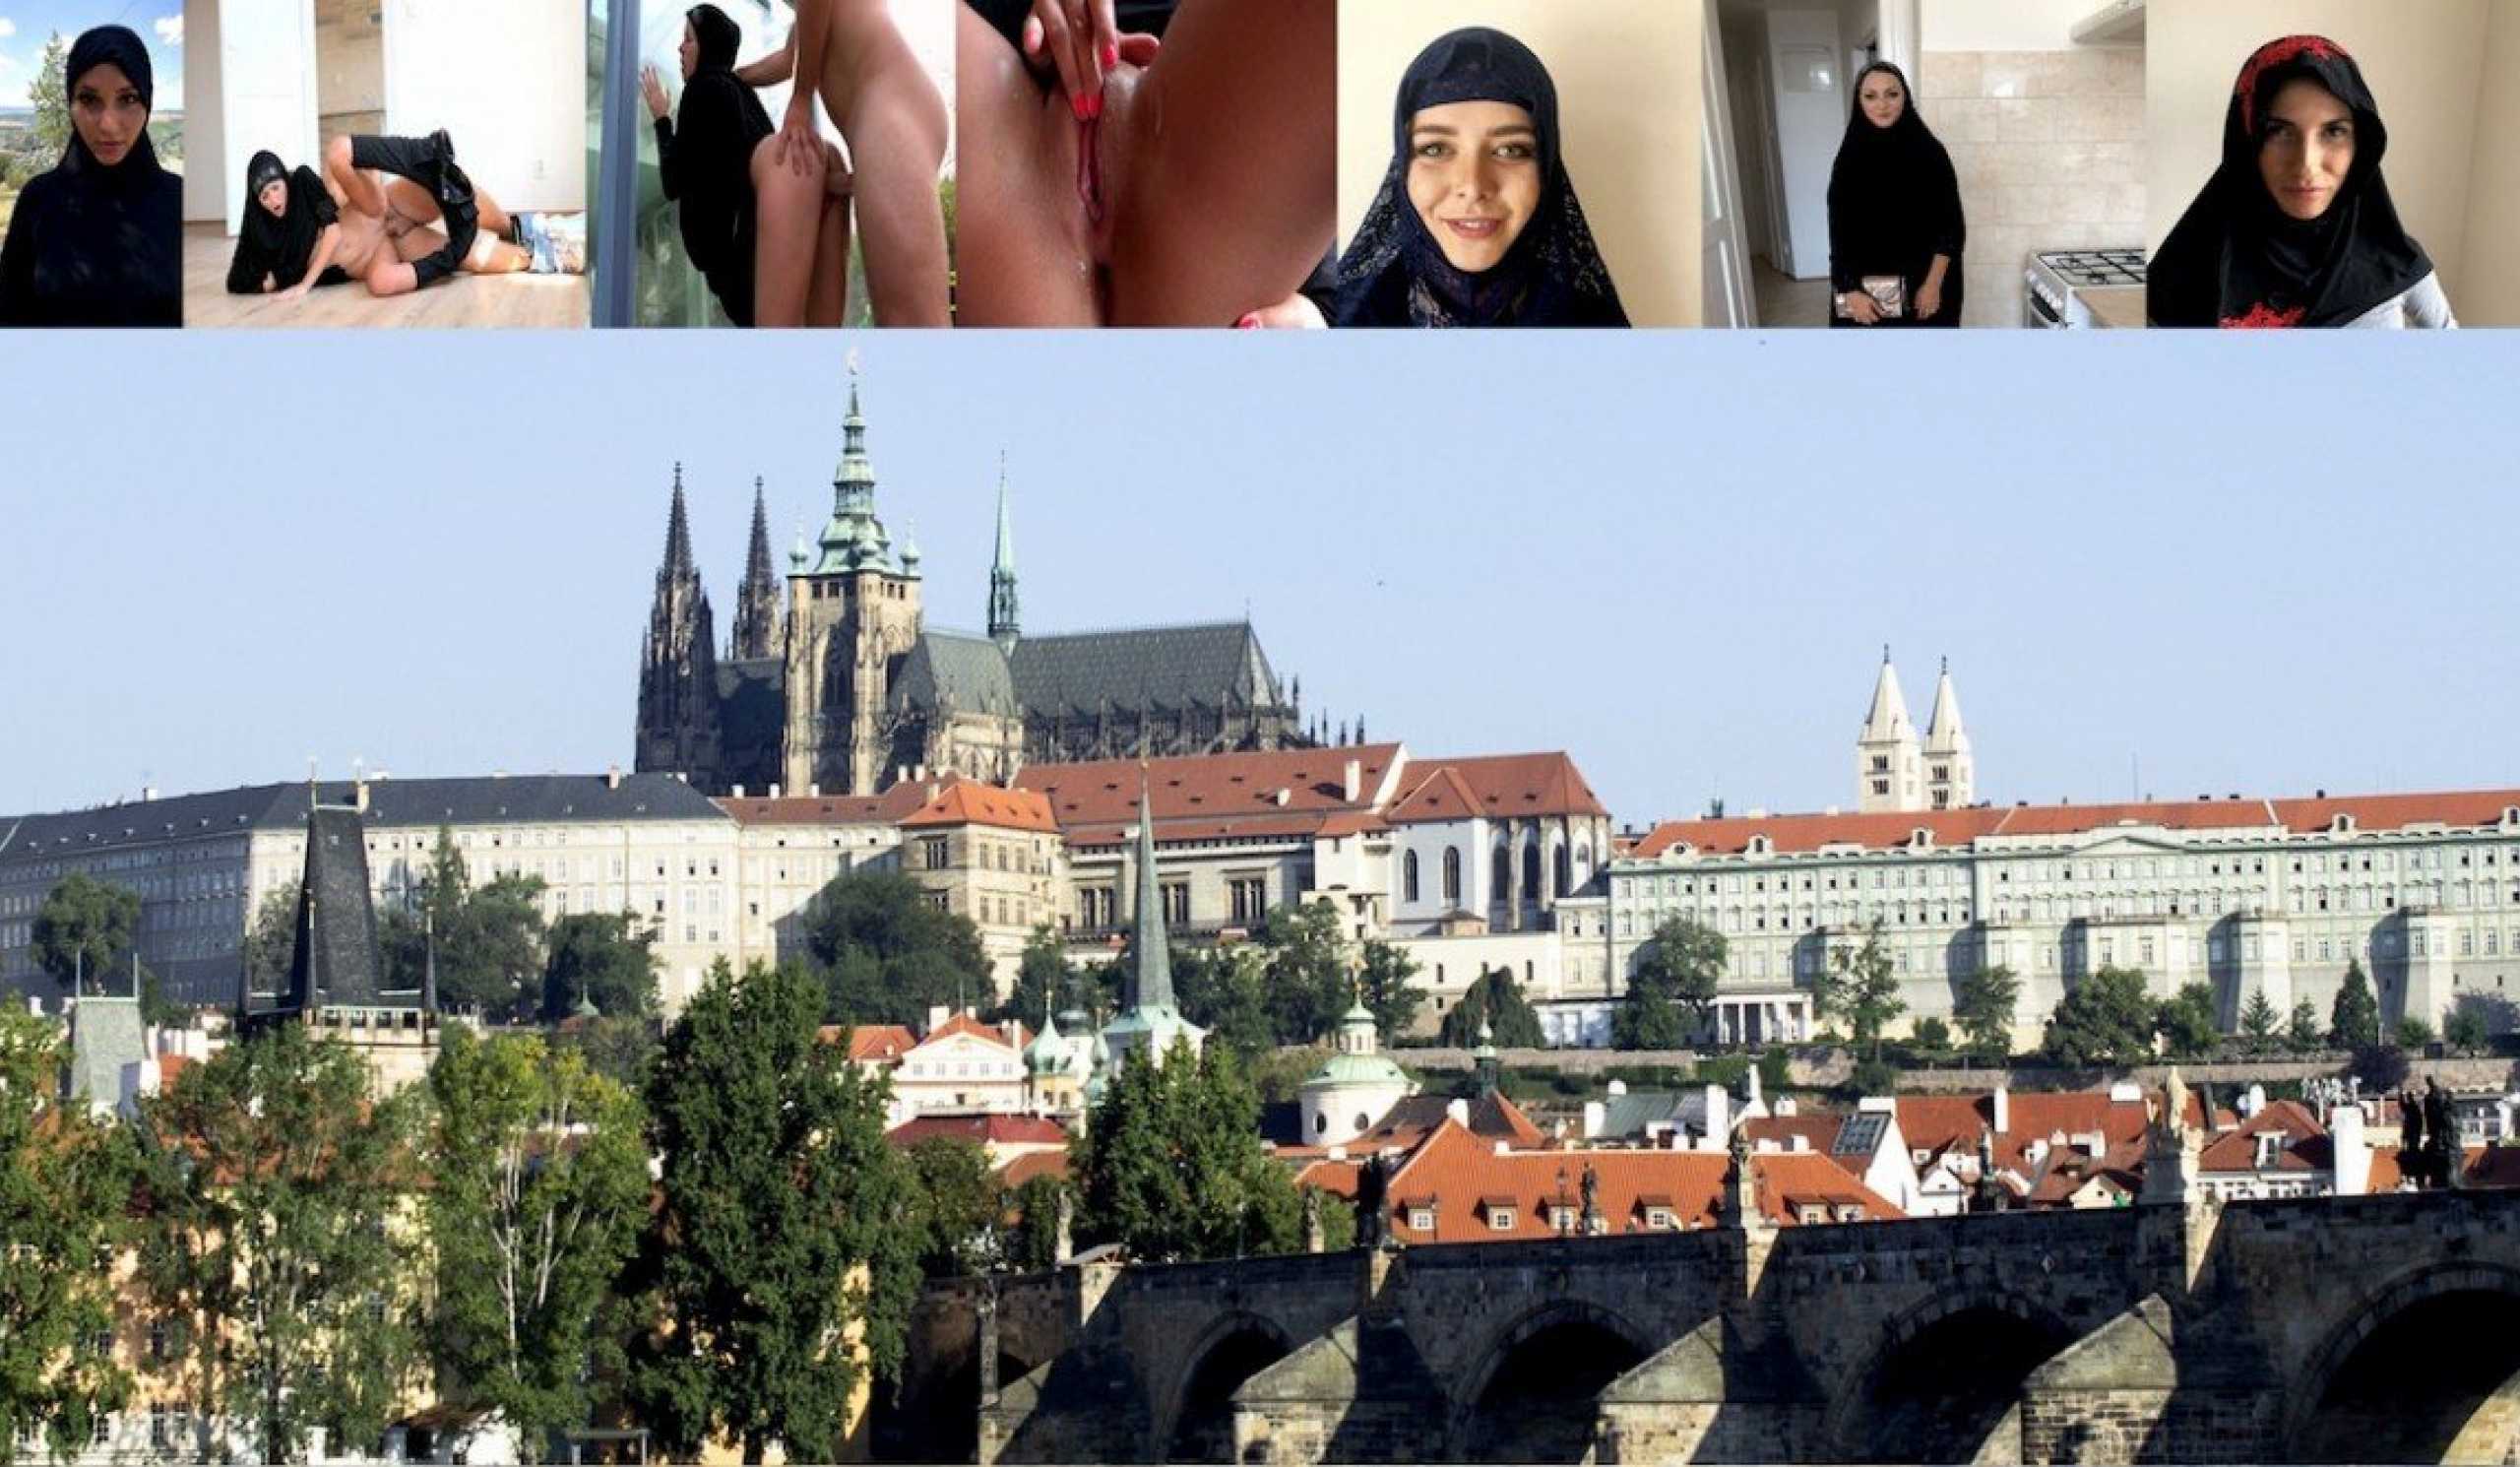 Muslims Xxx Video Download Com - Czech muslim girl fucking hard | Sex With Muslims